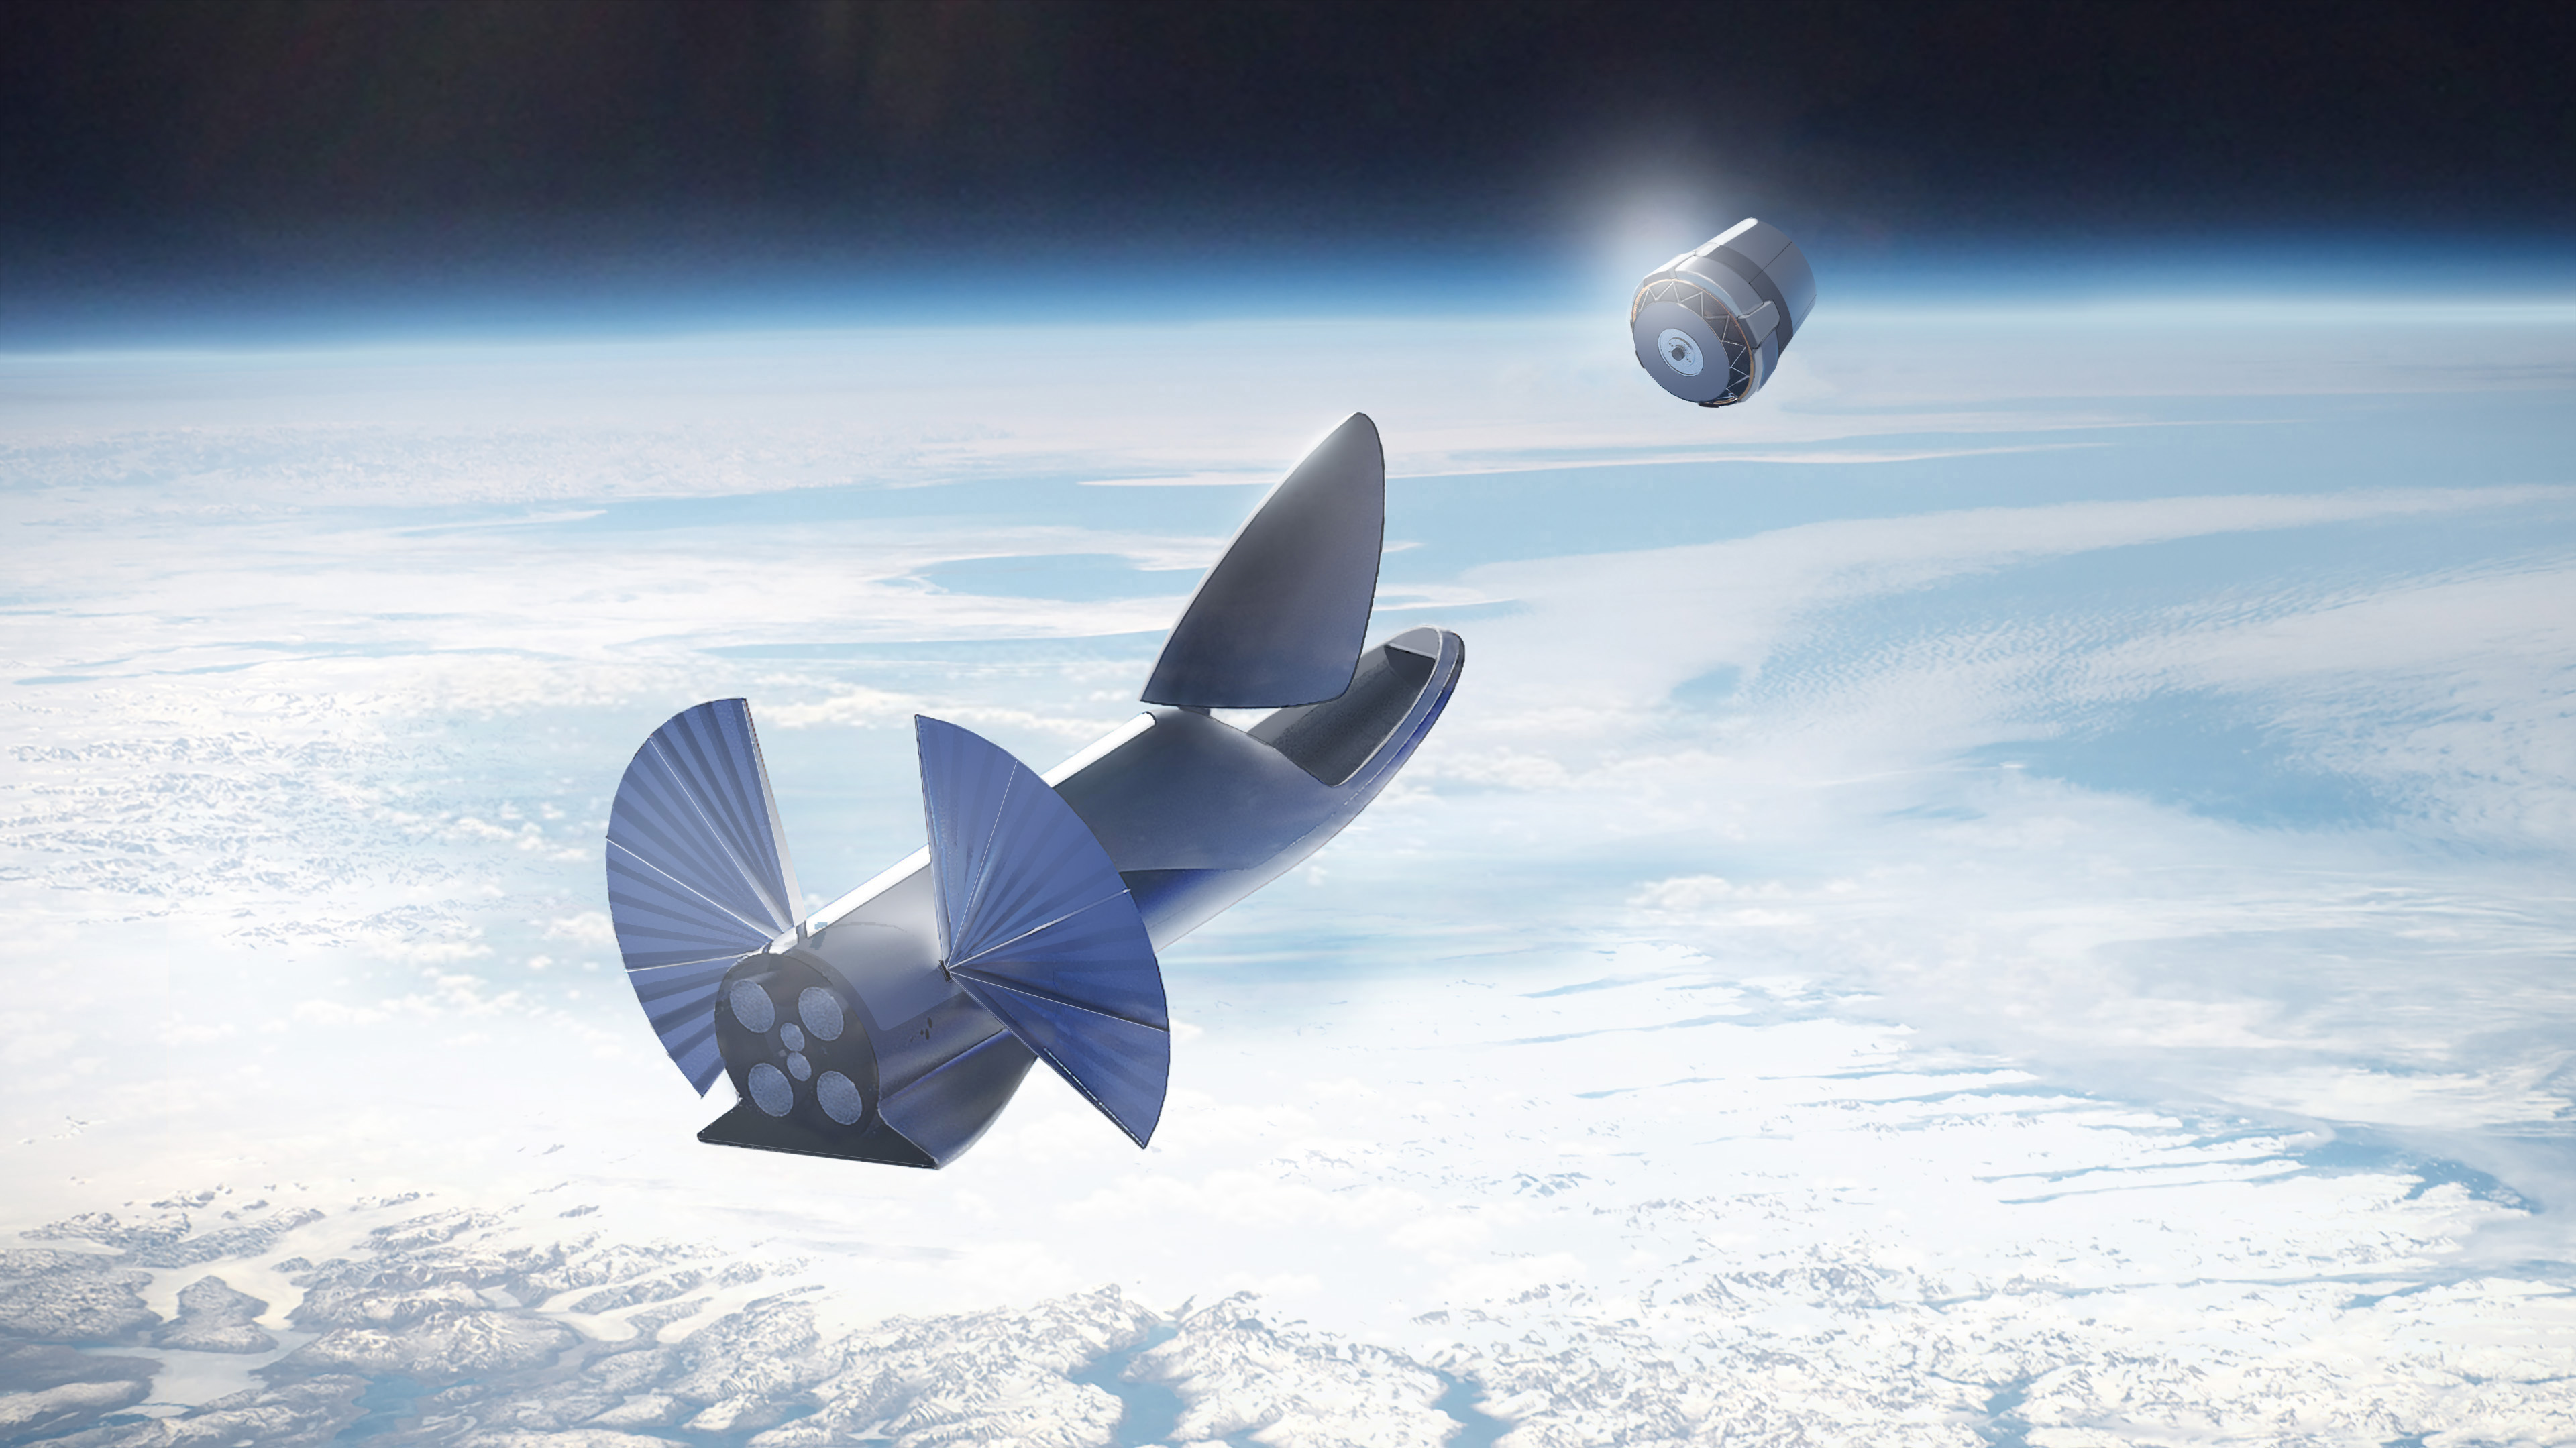 Открытый космос. 12 000 спутников Илона Маска дадут всем землянам доступ в интернет, и отключить его будет невозможно